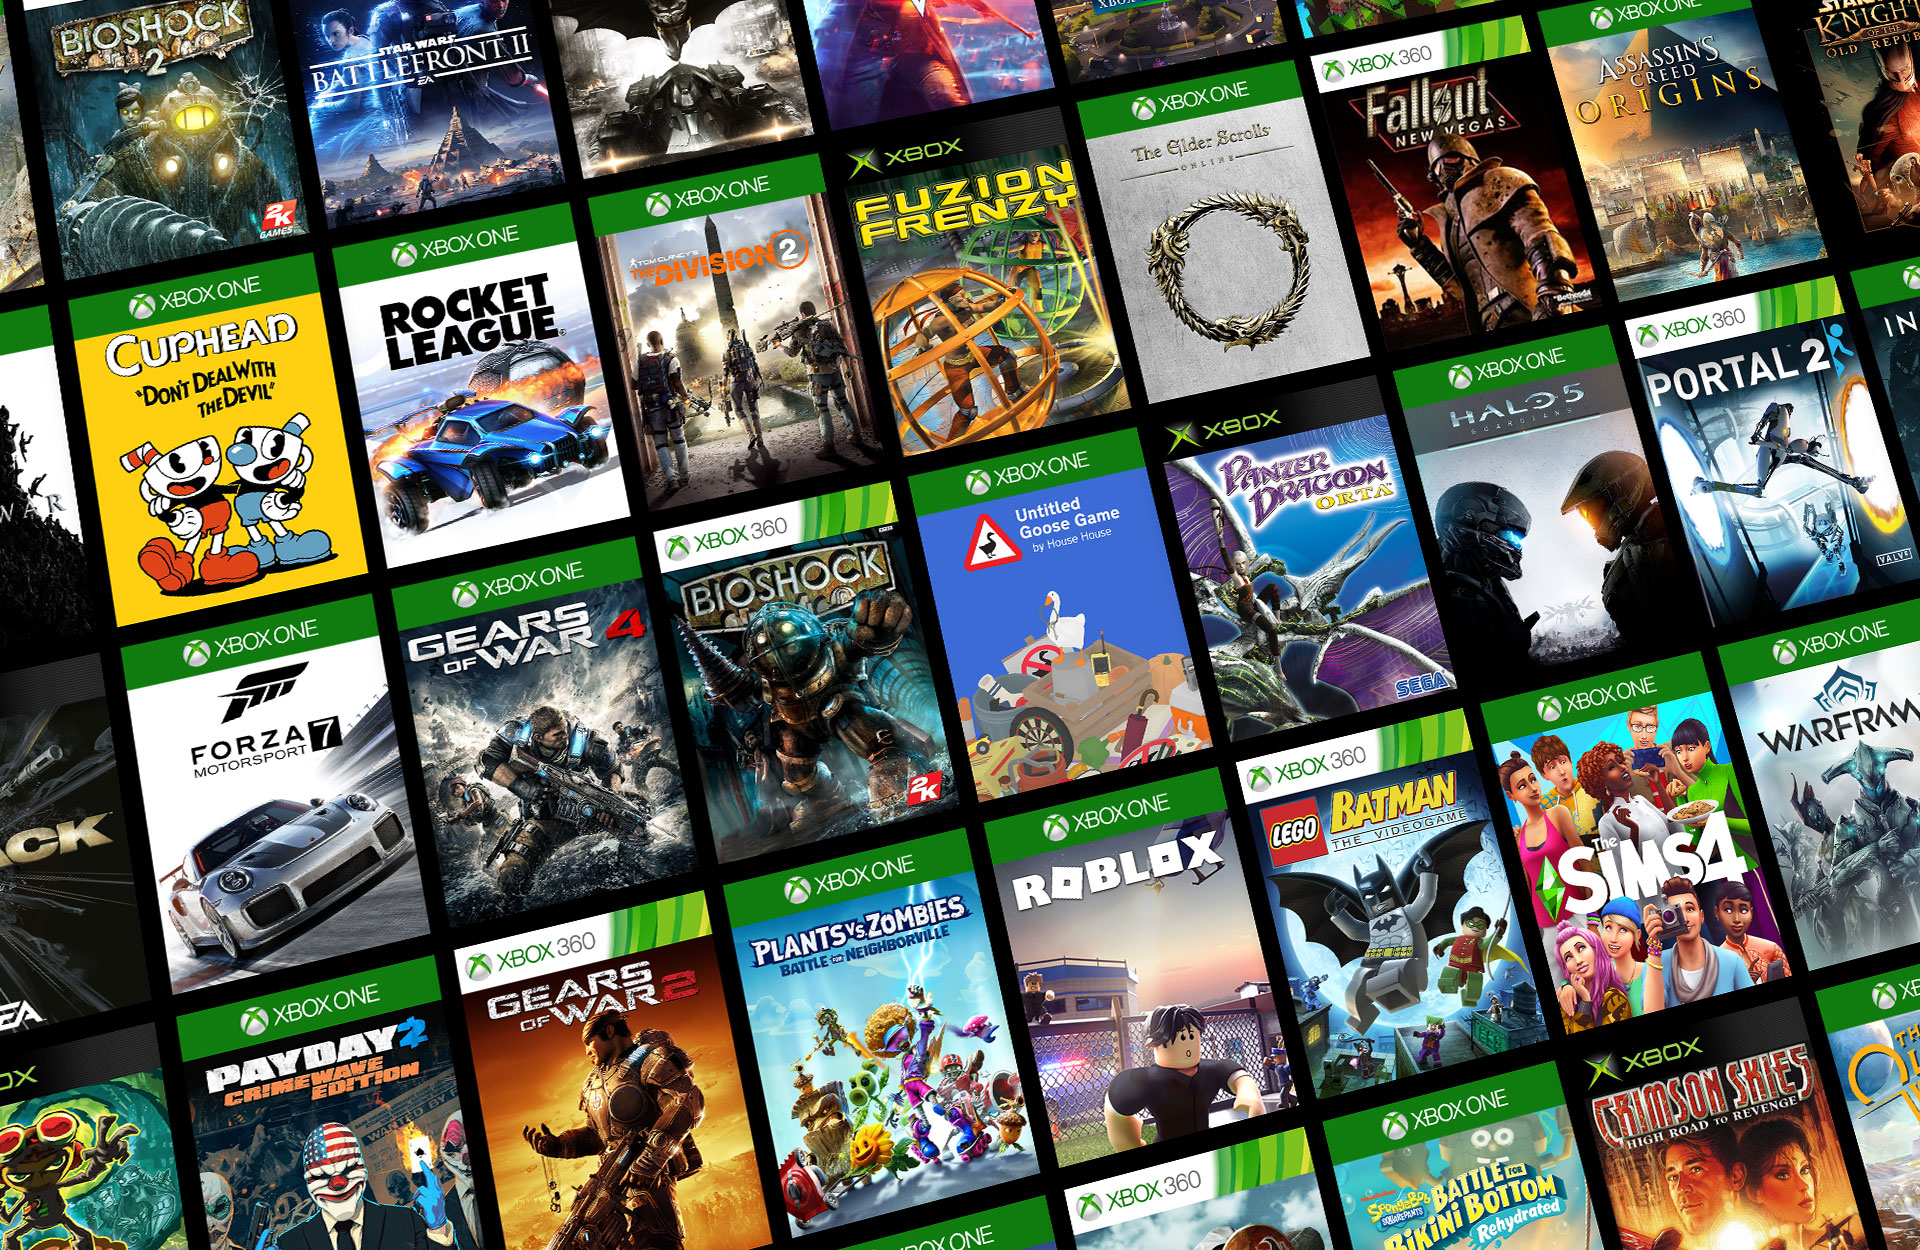 Mosaico de títulos de juegos compatibles con versiones anteriores de Xbox